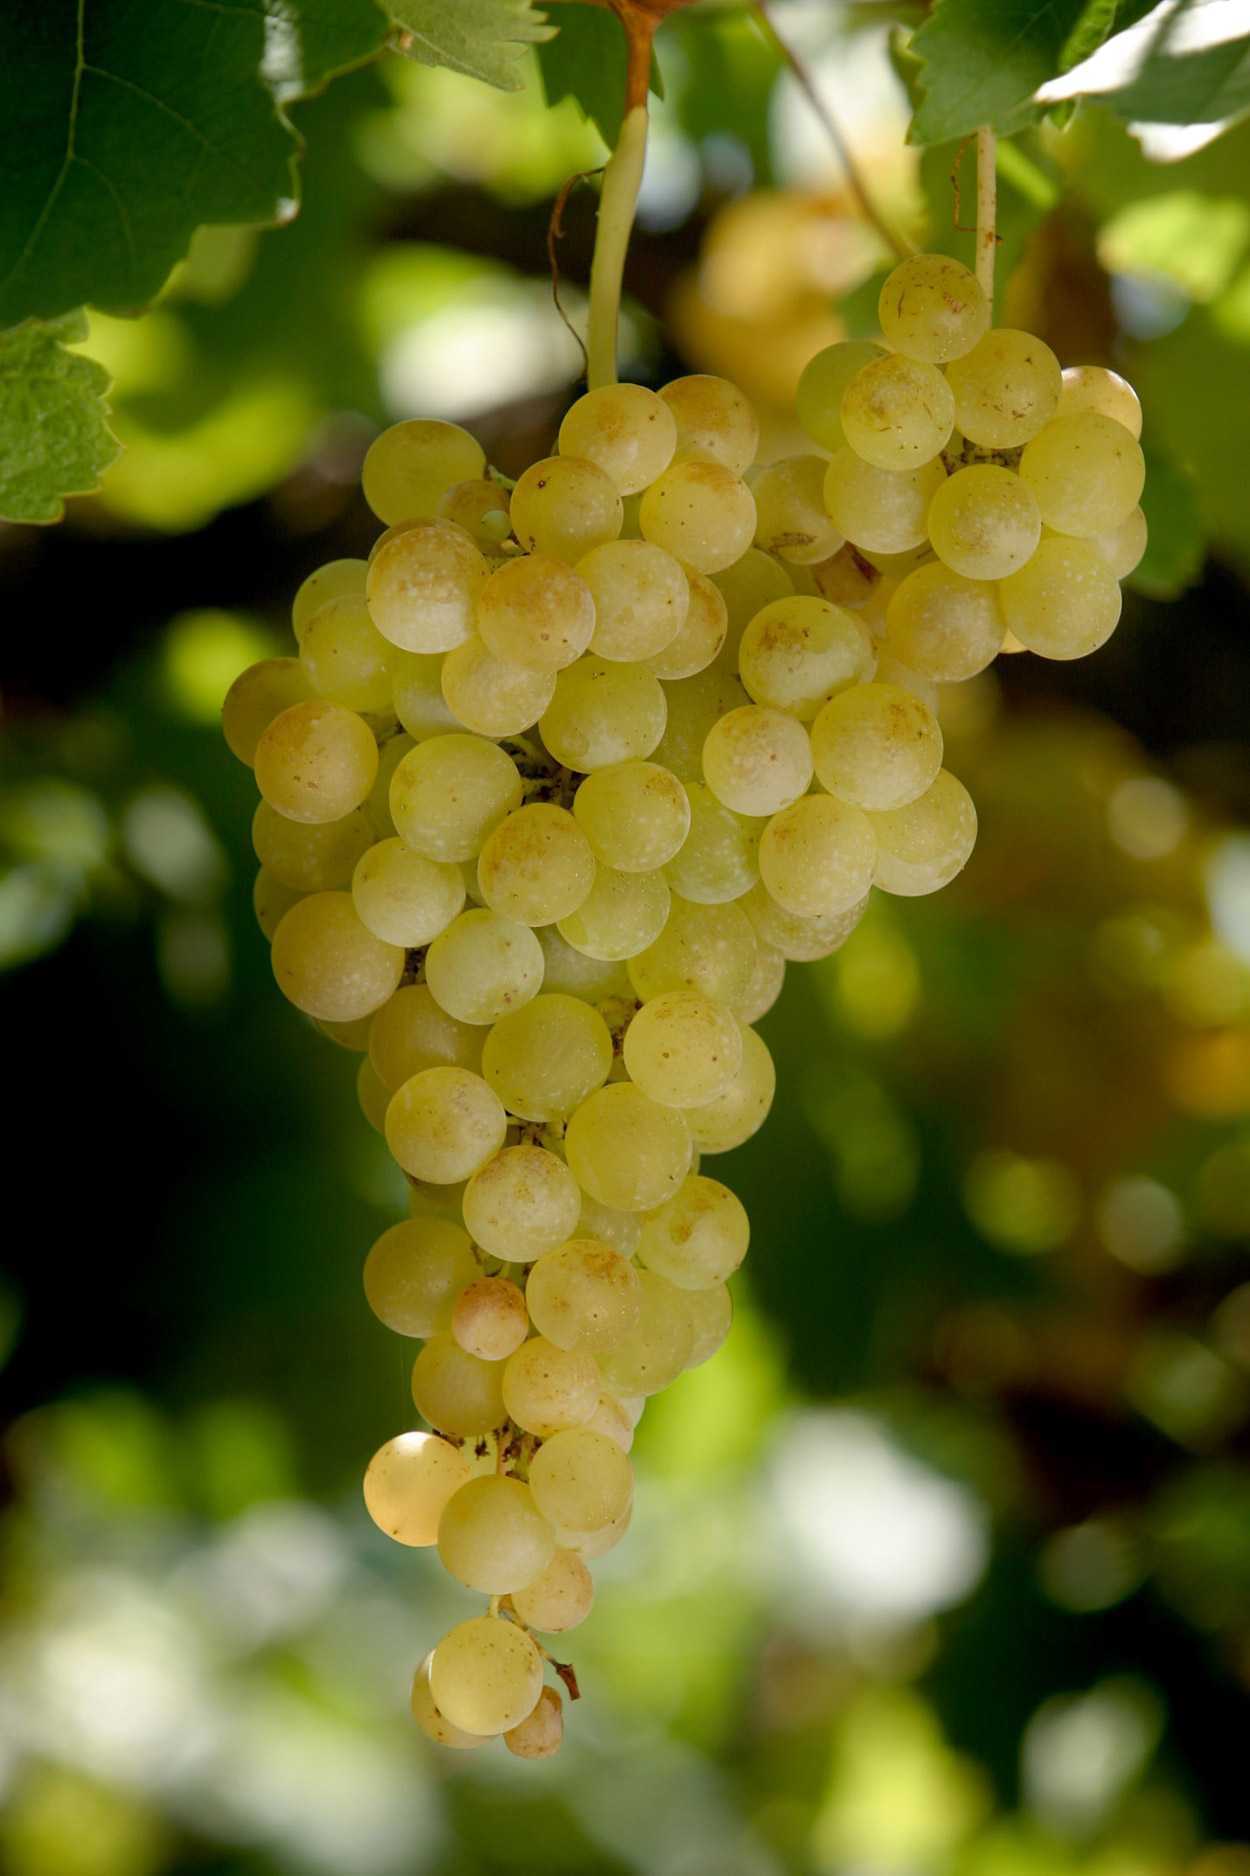 Обзор сорта винограда ркатицели | wine expertise